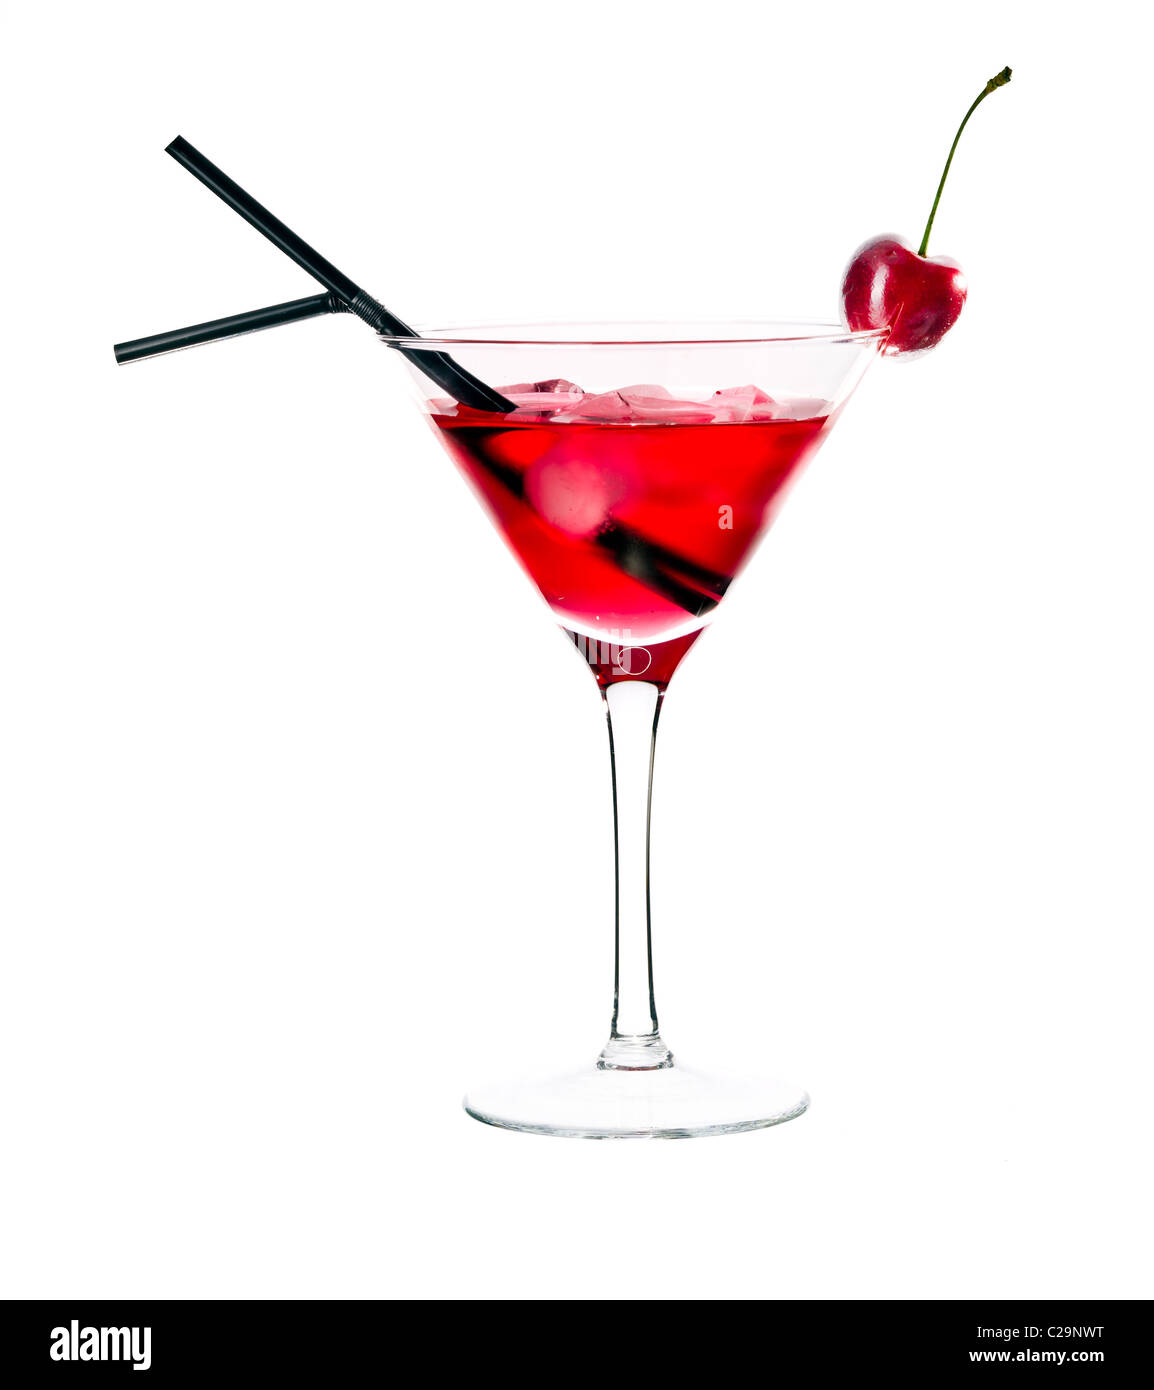 Rotes Getränk in Martini-Glas, garniert mit Marachino Kirsche. Isoliert auf weißem Hintergrund. Stockfoto